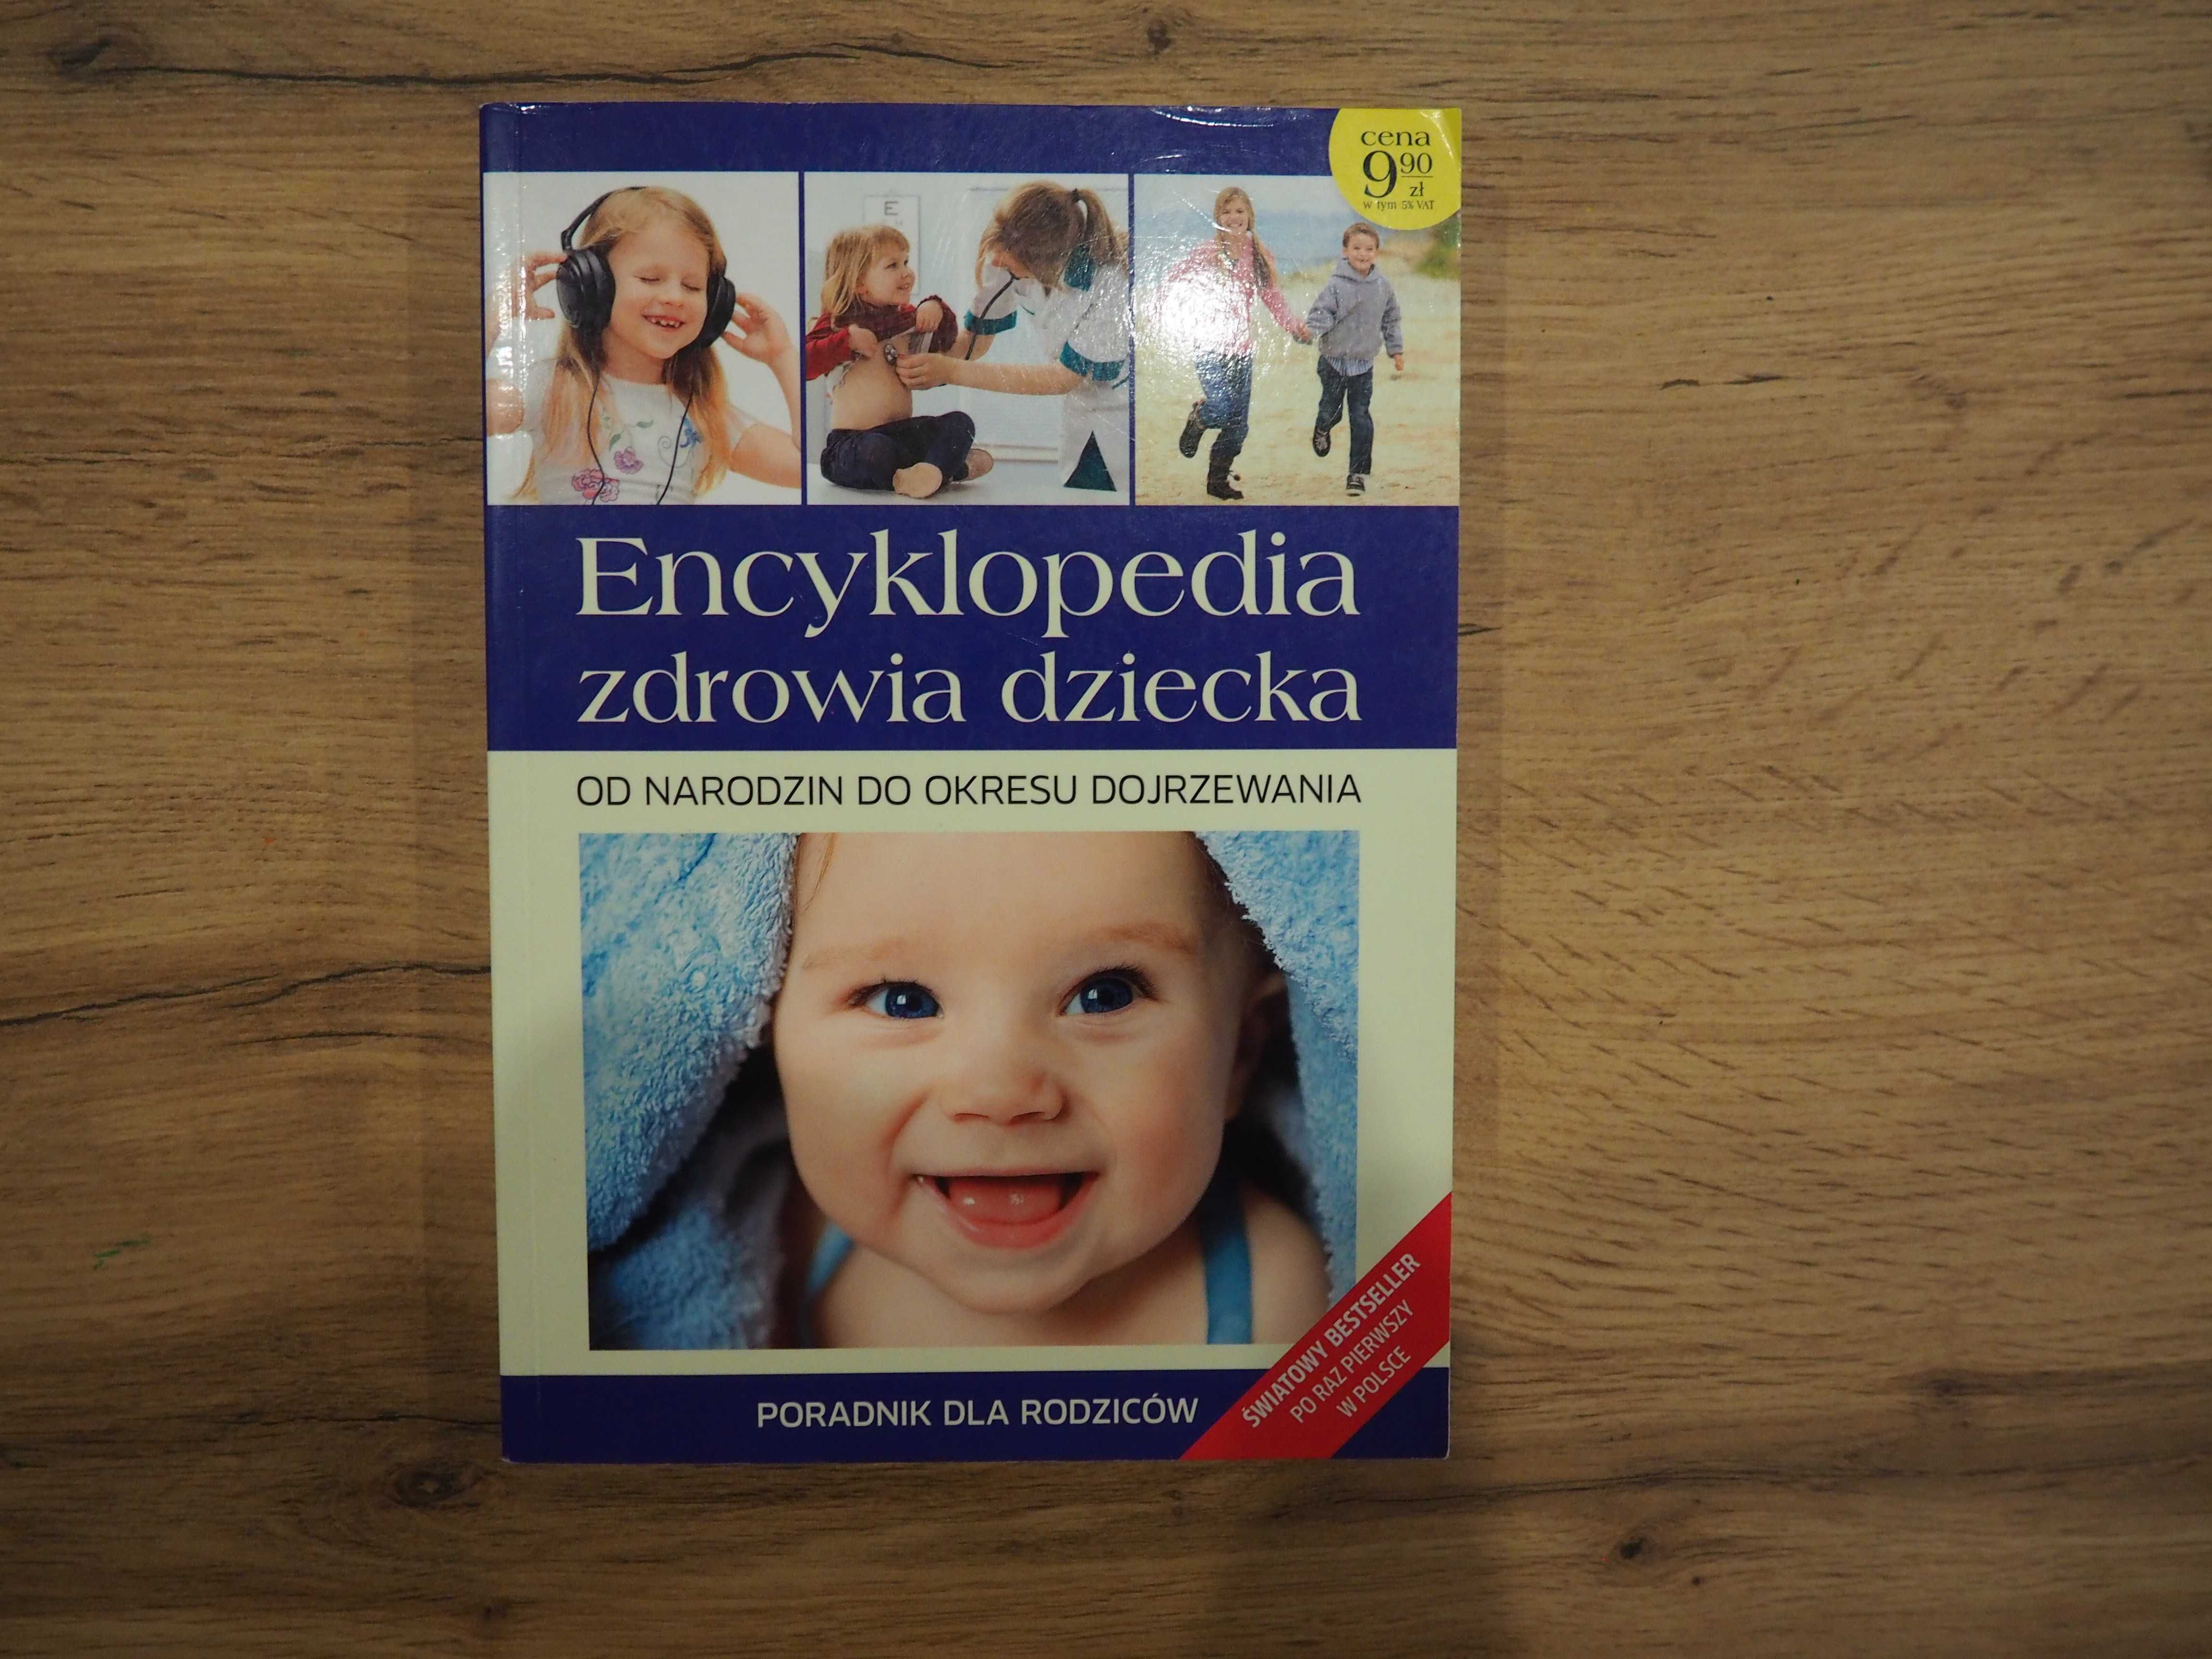 Encyklopedia zdrowia dziecka od narodzin do okresu dojrzewania